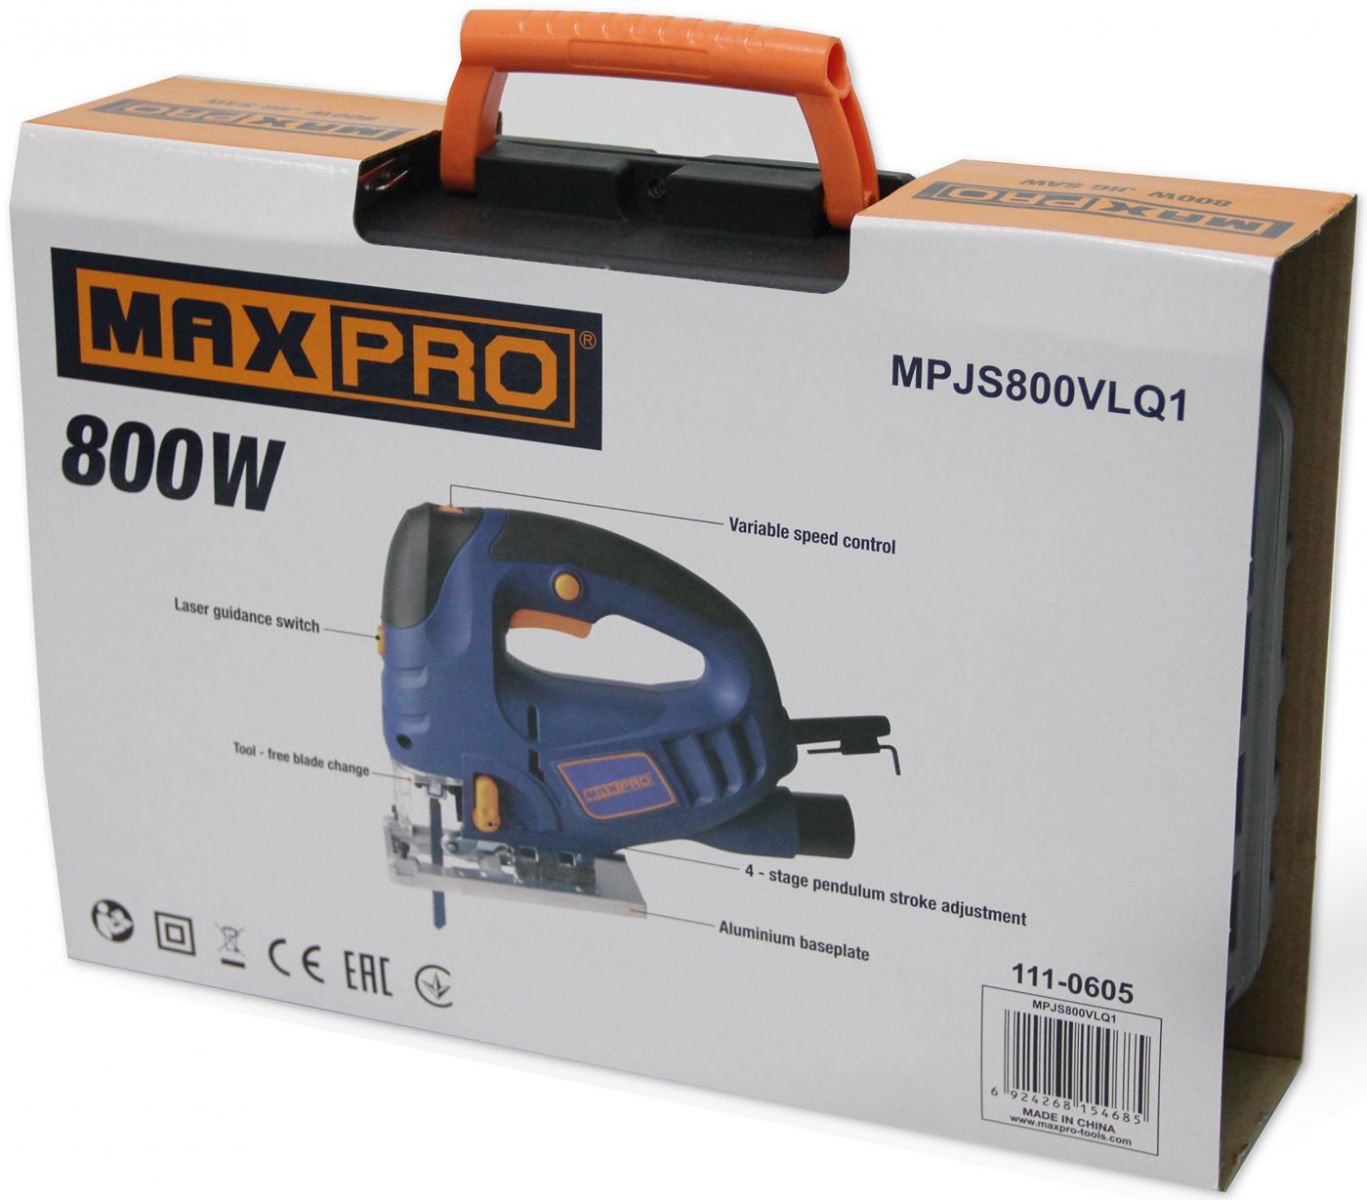 Maxpro-MPJS800VLQ1